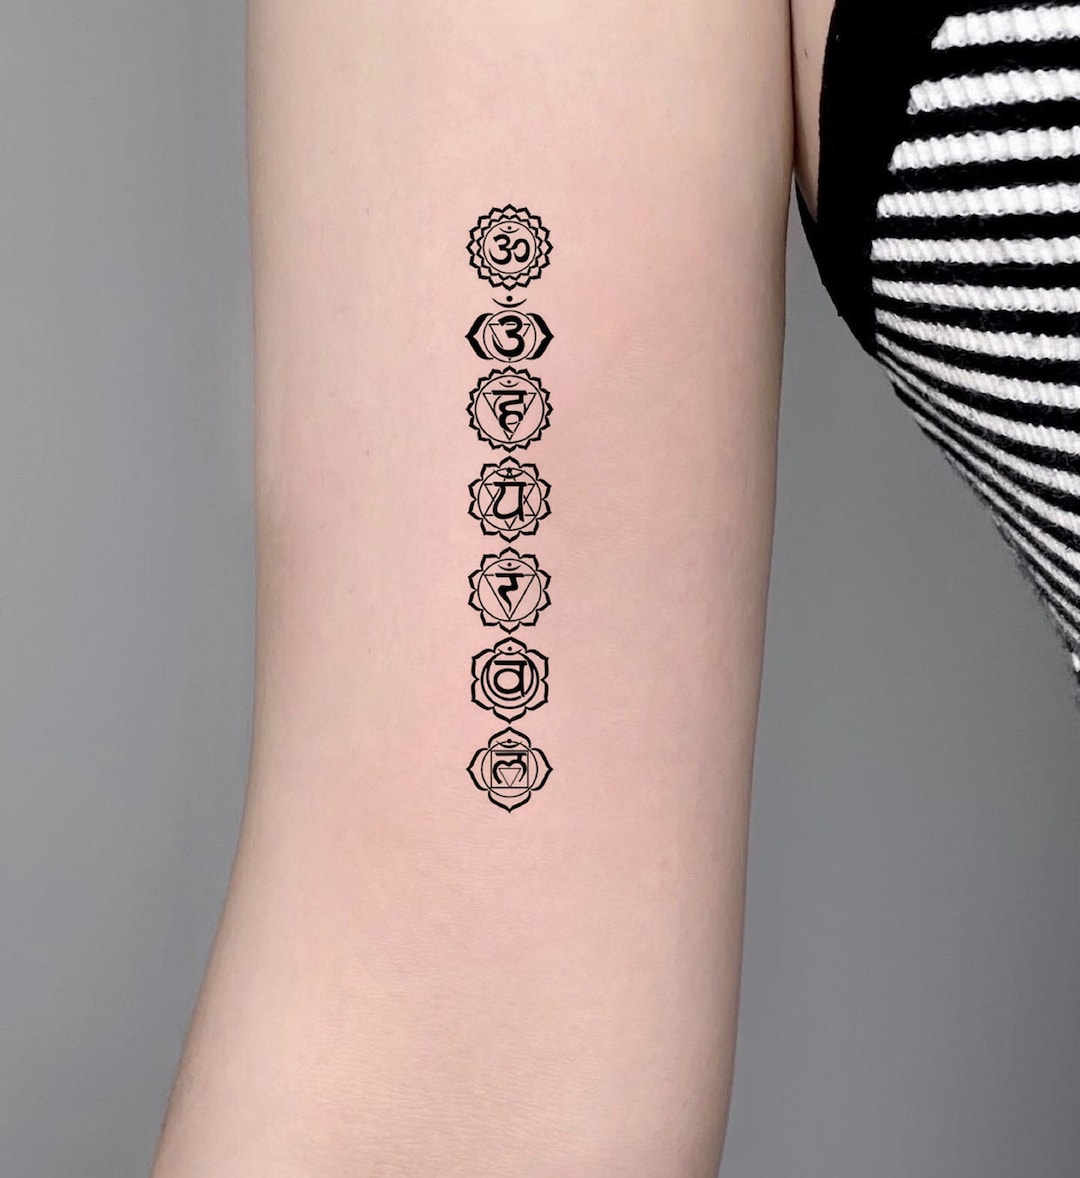 Seven Chakras Tattoo on My Arm